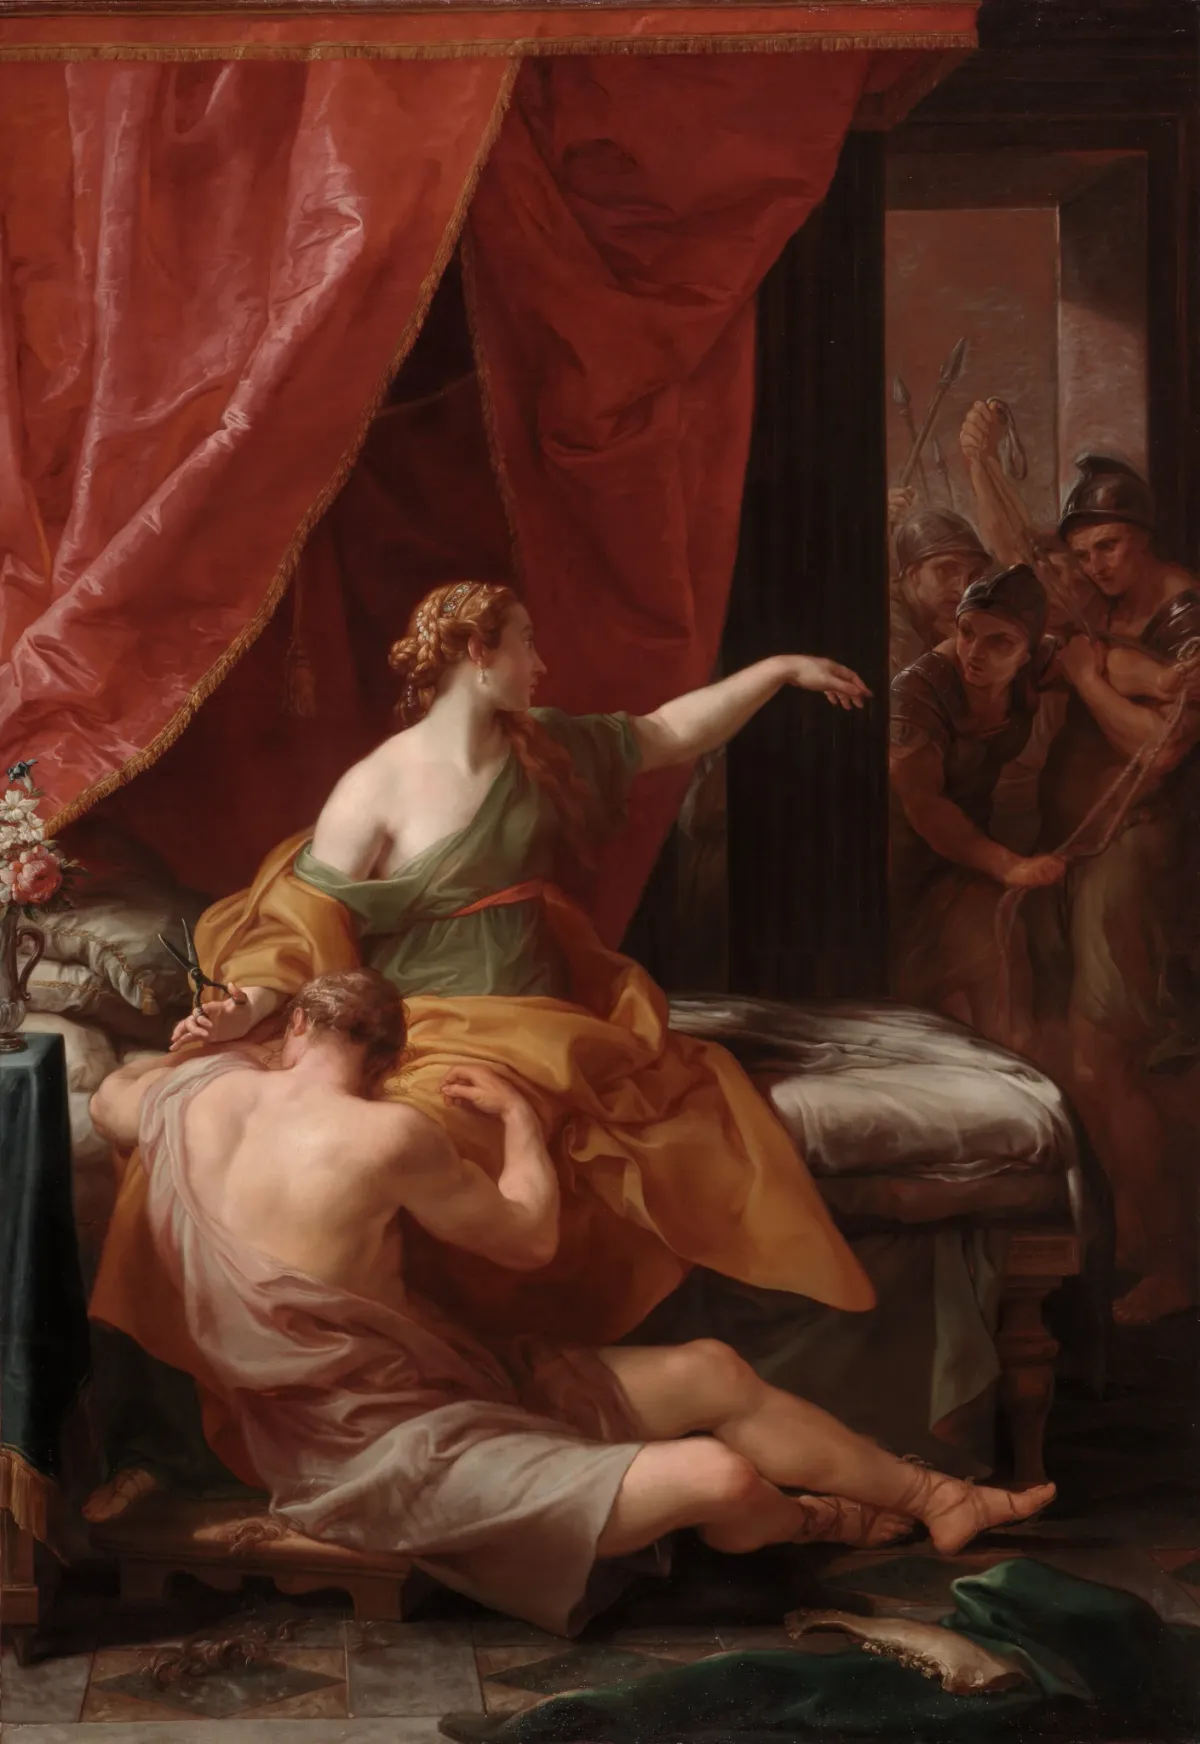 Samson and Delilah (1766, Italy) by Pompeo Girolamo Batoni - Public Domain Catholic Painting